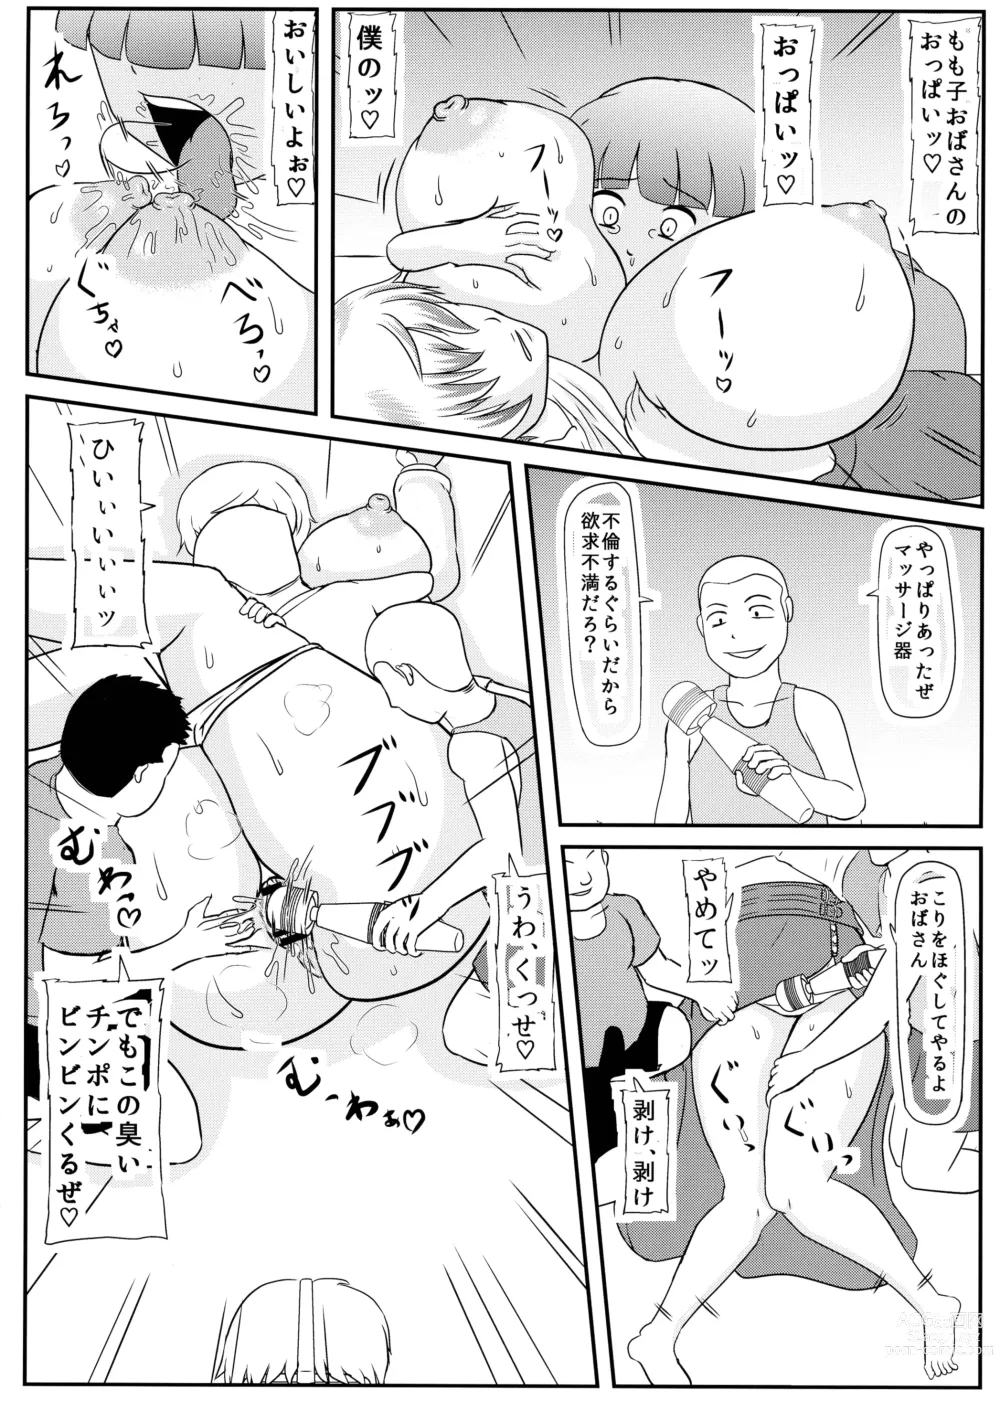 Page 6 of doujinshi Mama ga Shinyuu ni Kowasareta.